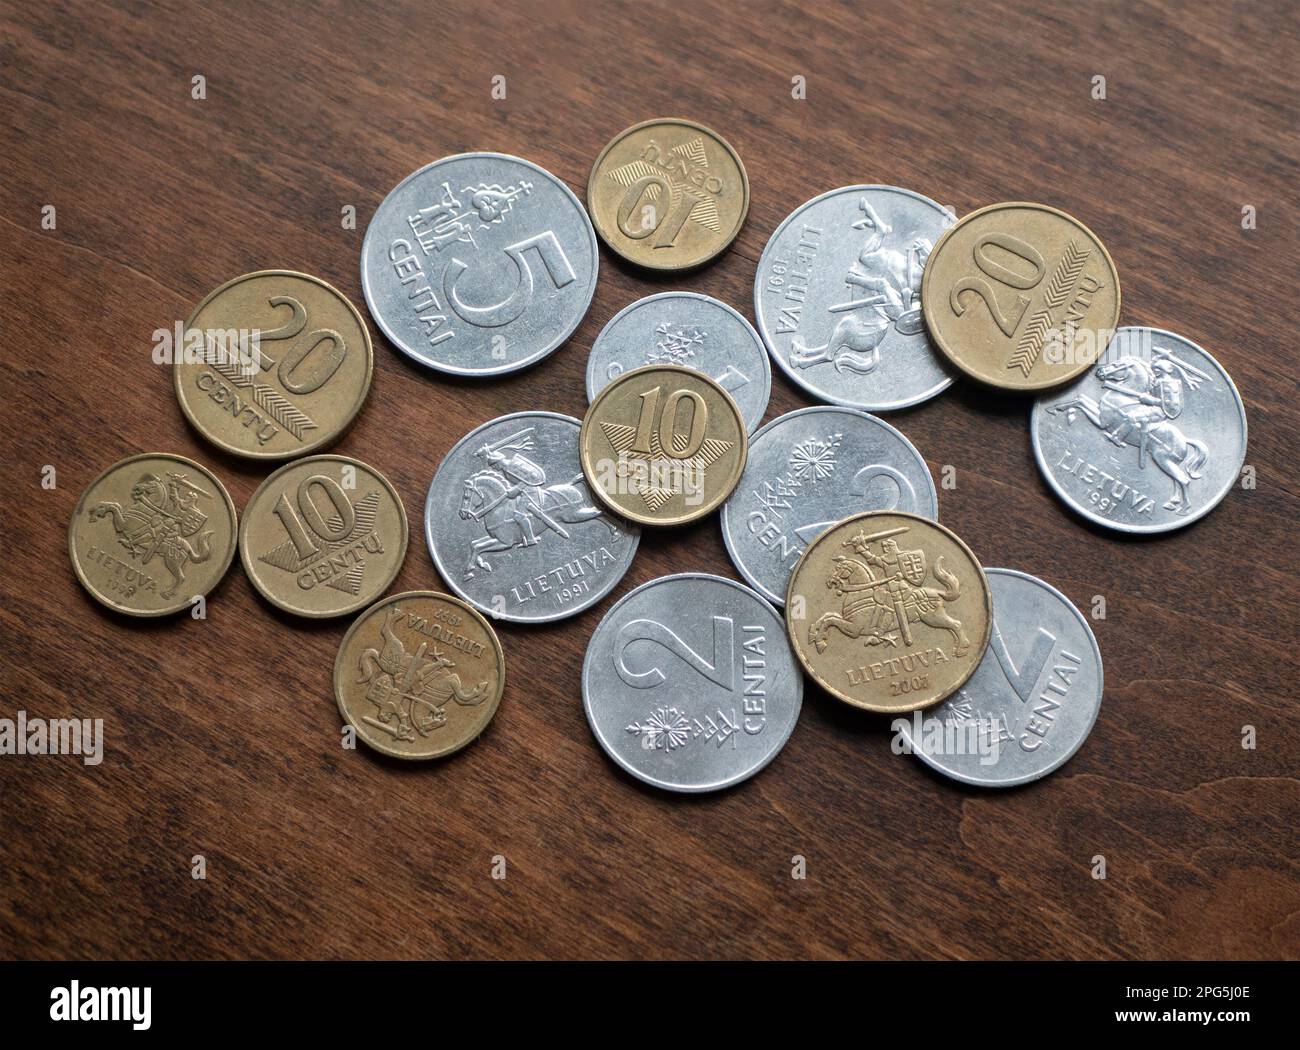 Pièces lituaniennes sur table en bois, gros plan. Anciennes devises locales. Argent de Lituanie Banque D'Images